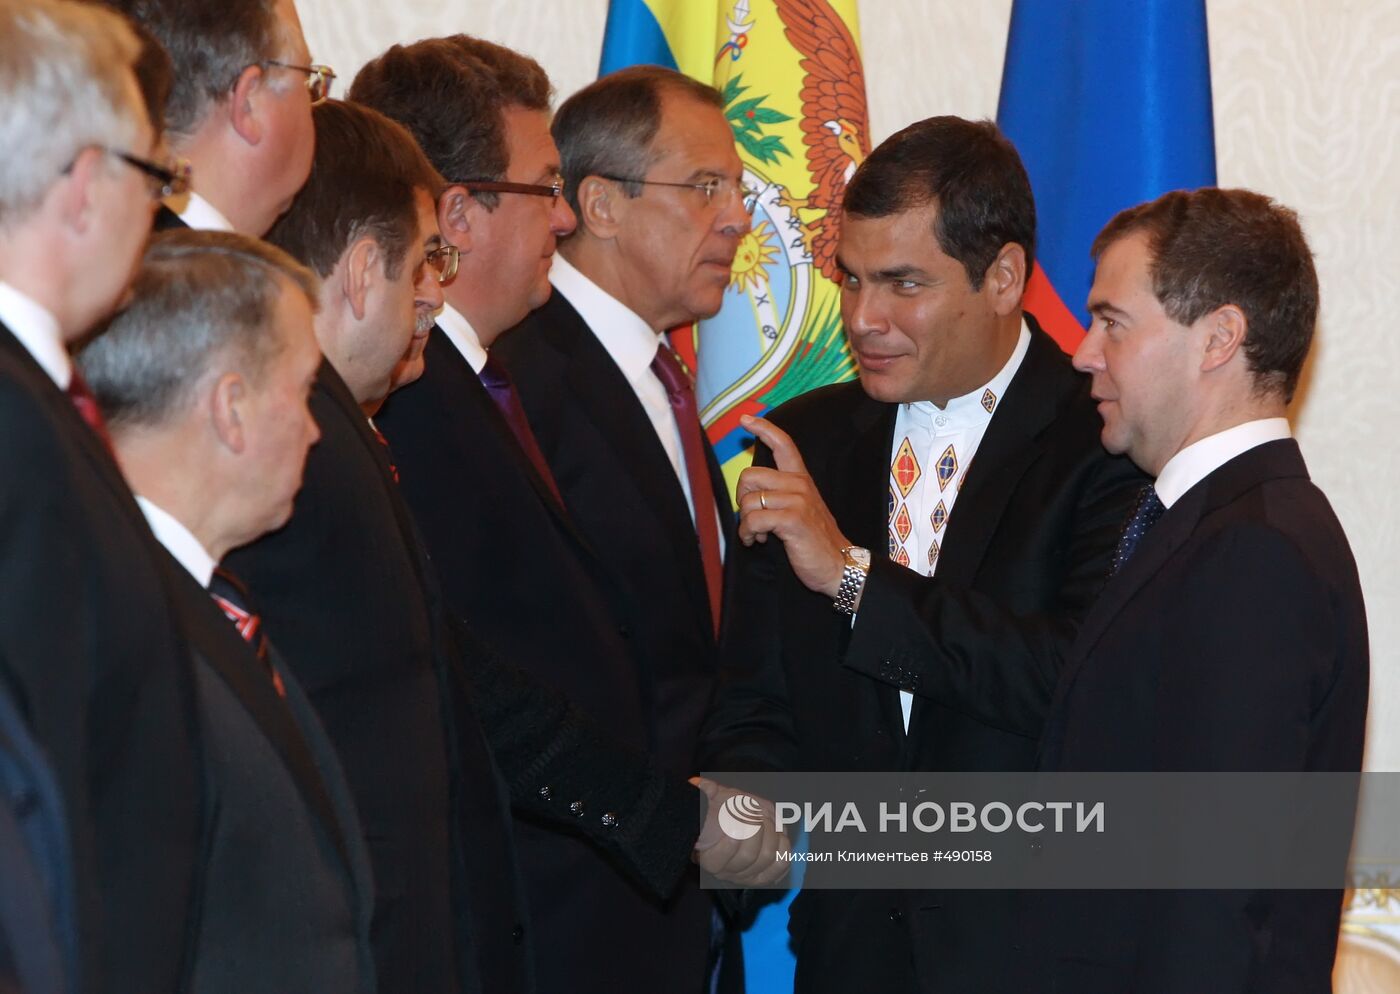 Представление членов делегаций России и Эквадора